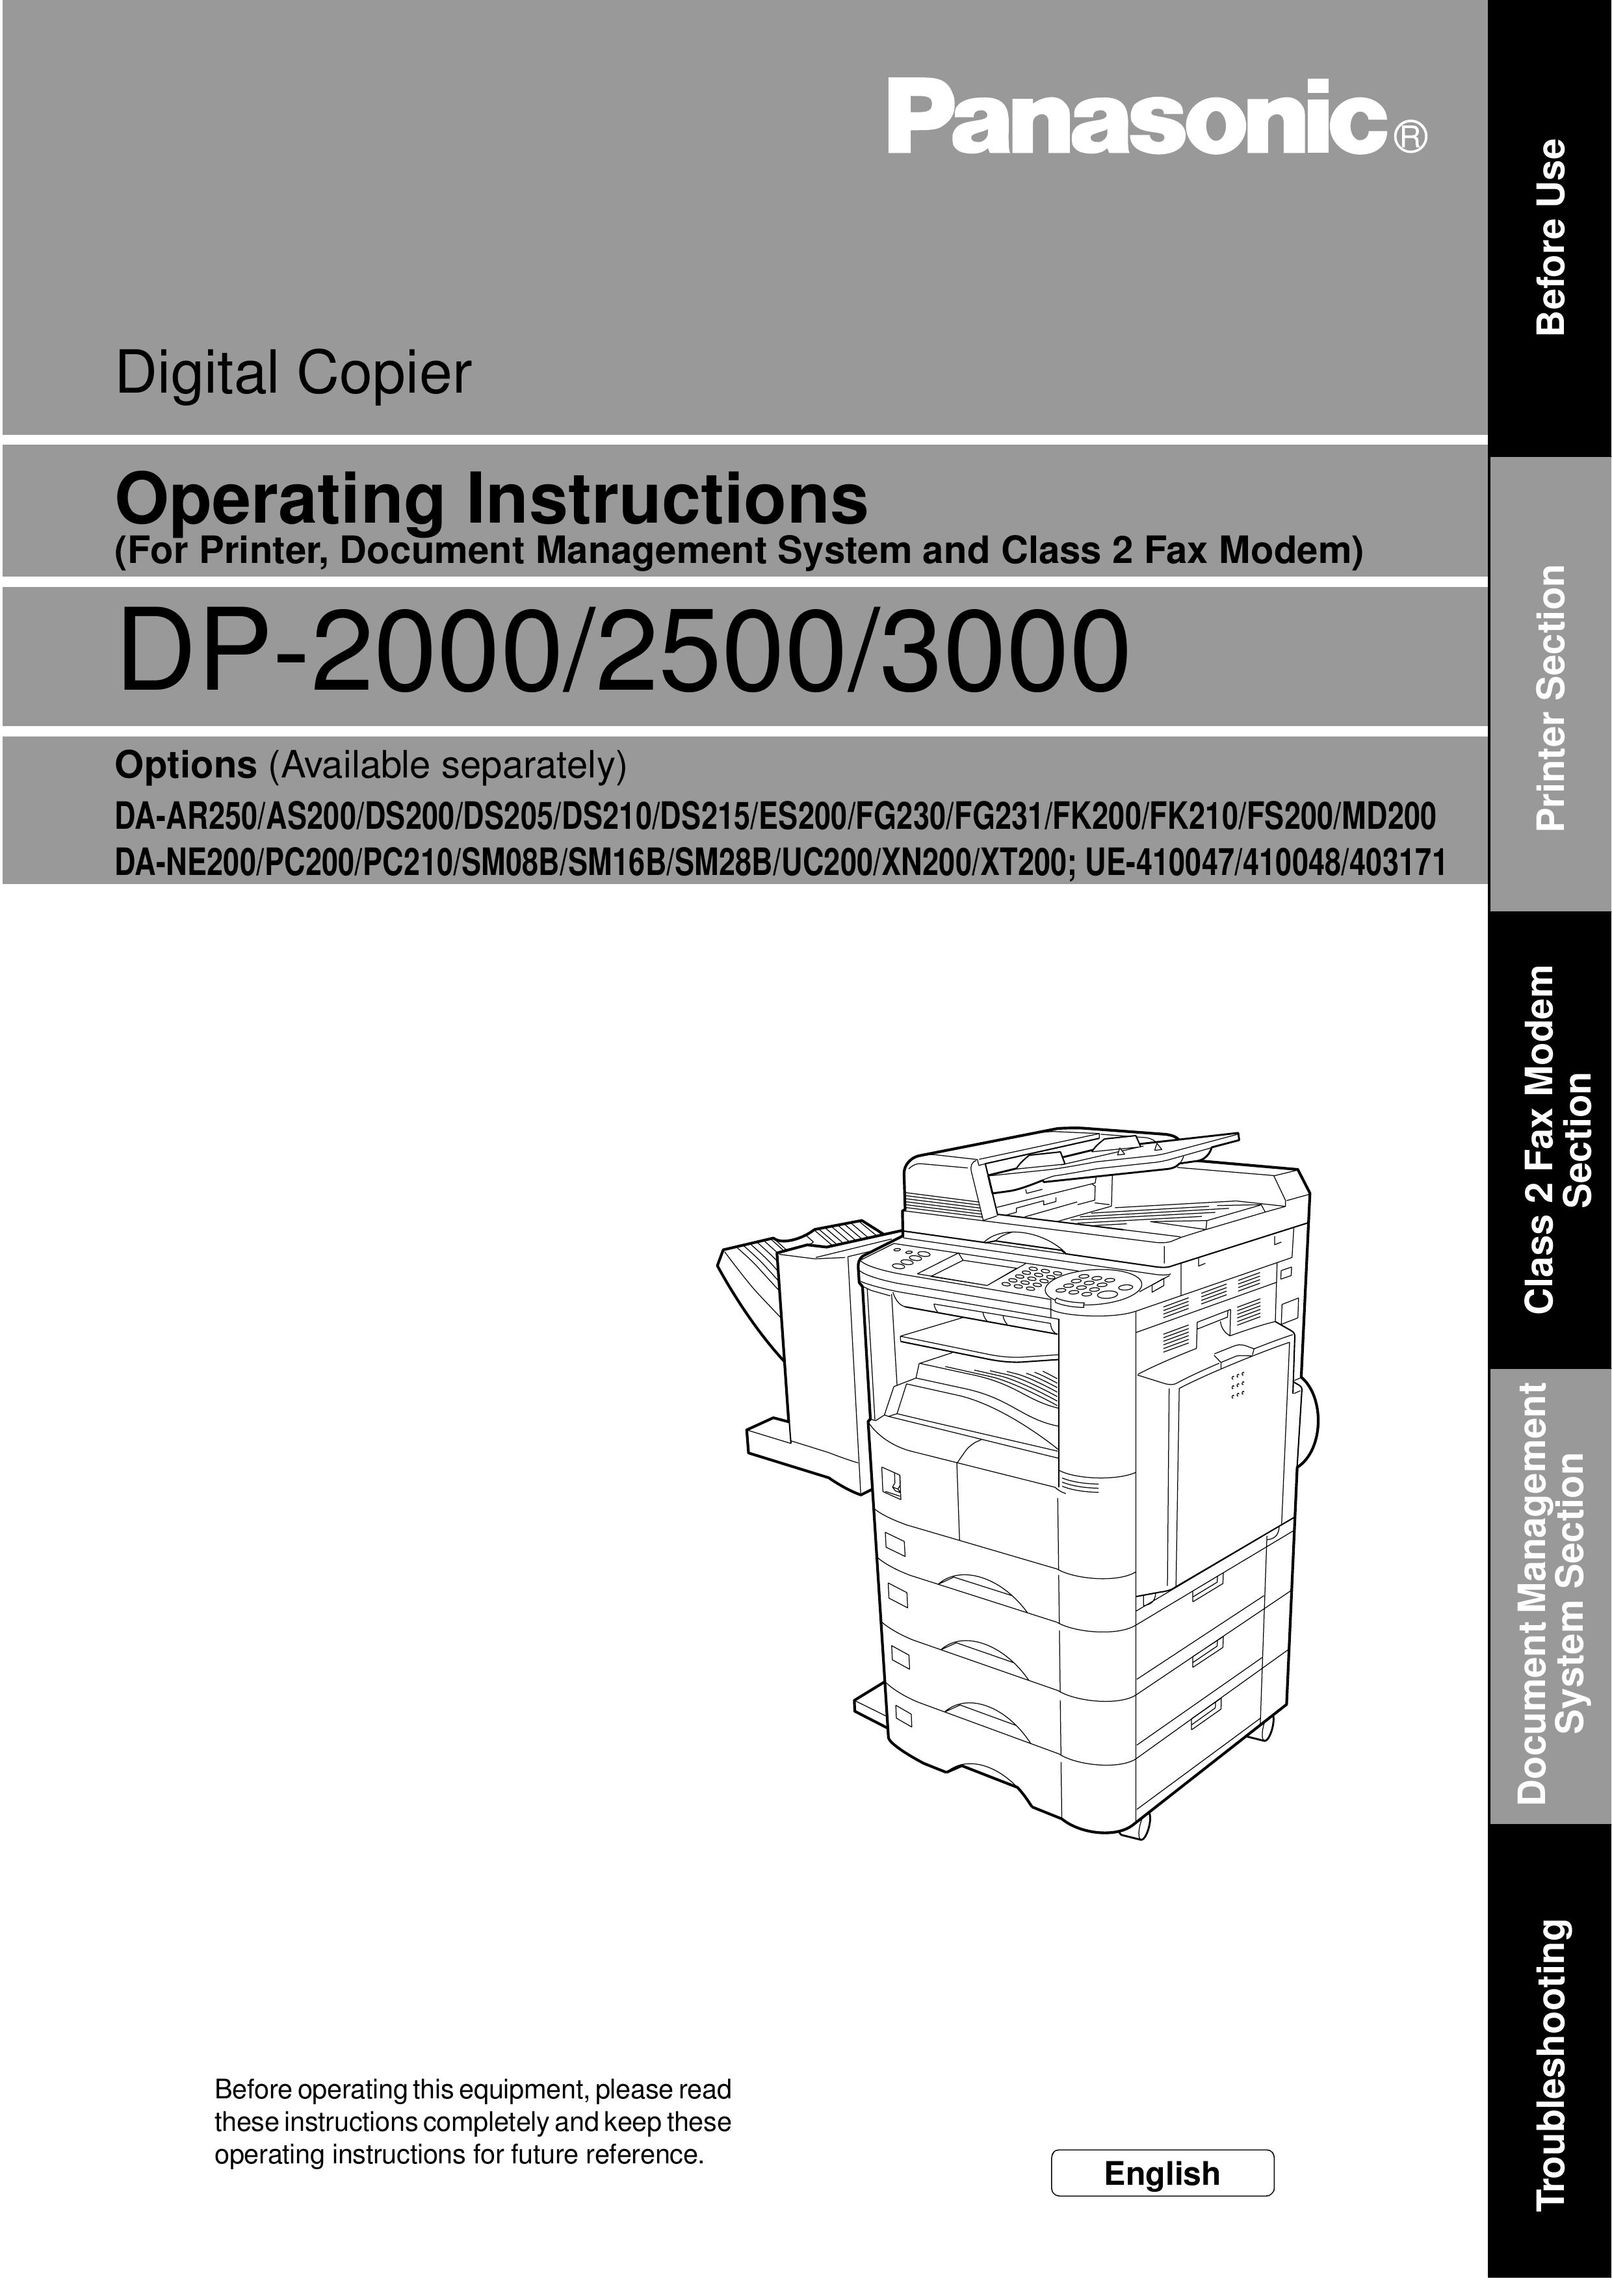 Panasonic DP-3000 All in One Printer User Manual